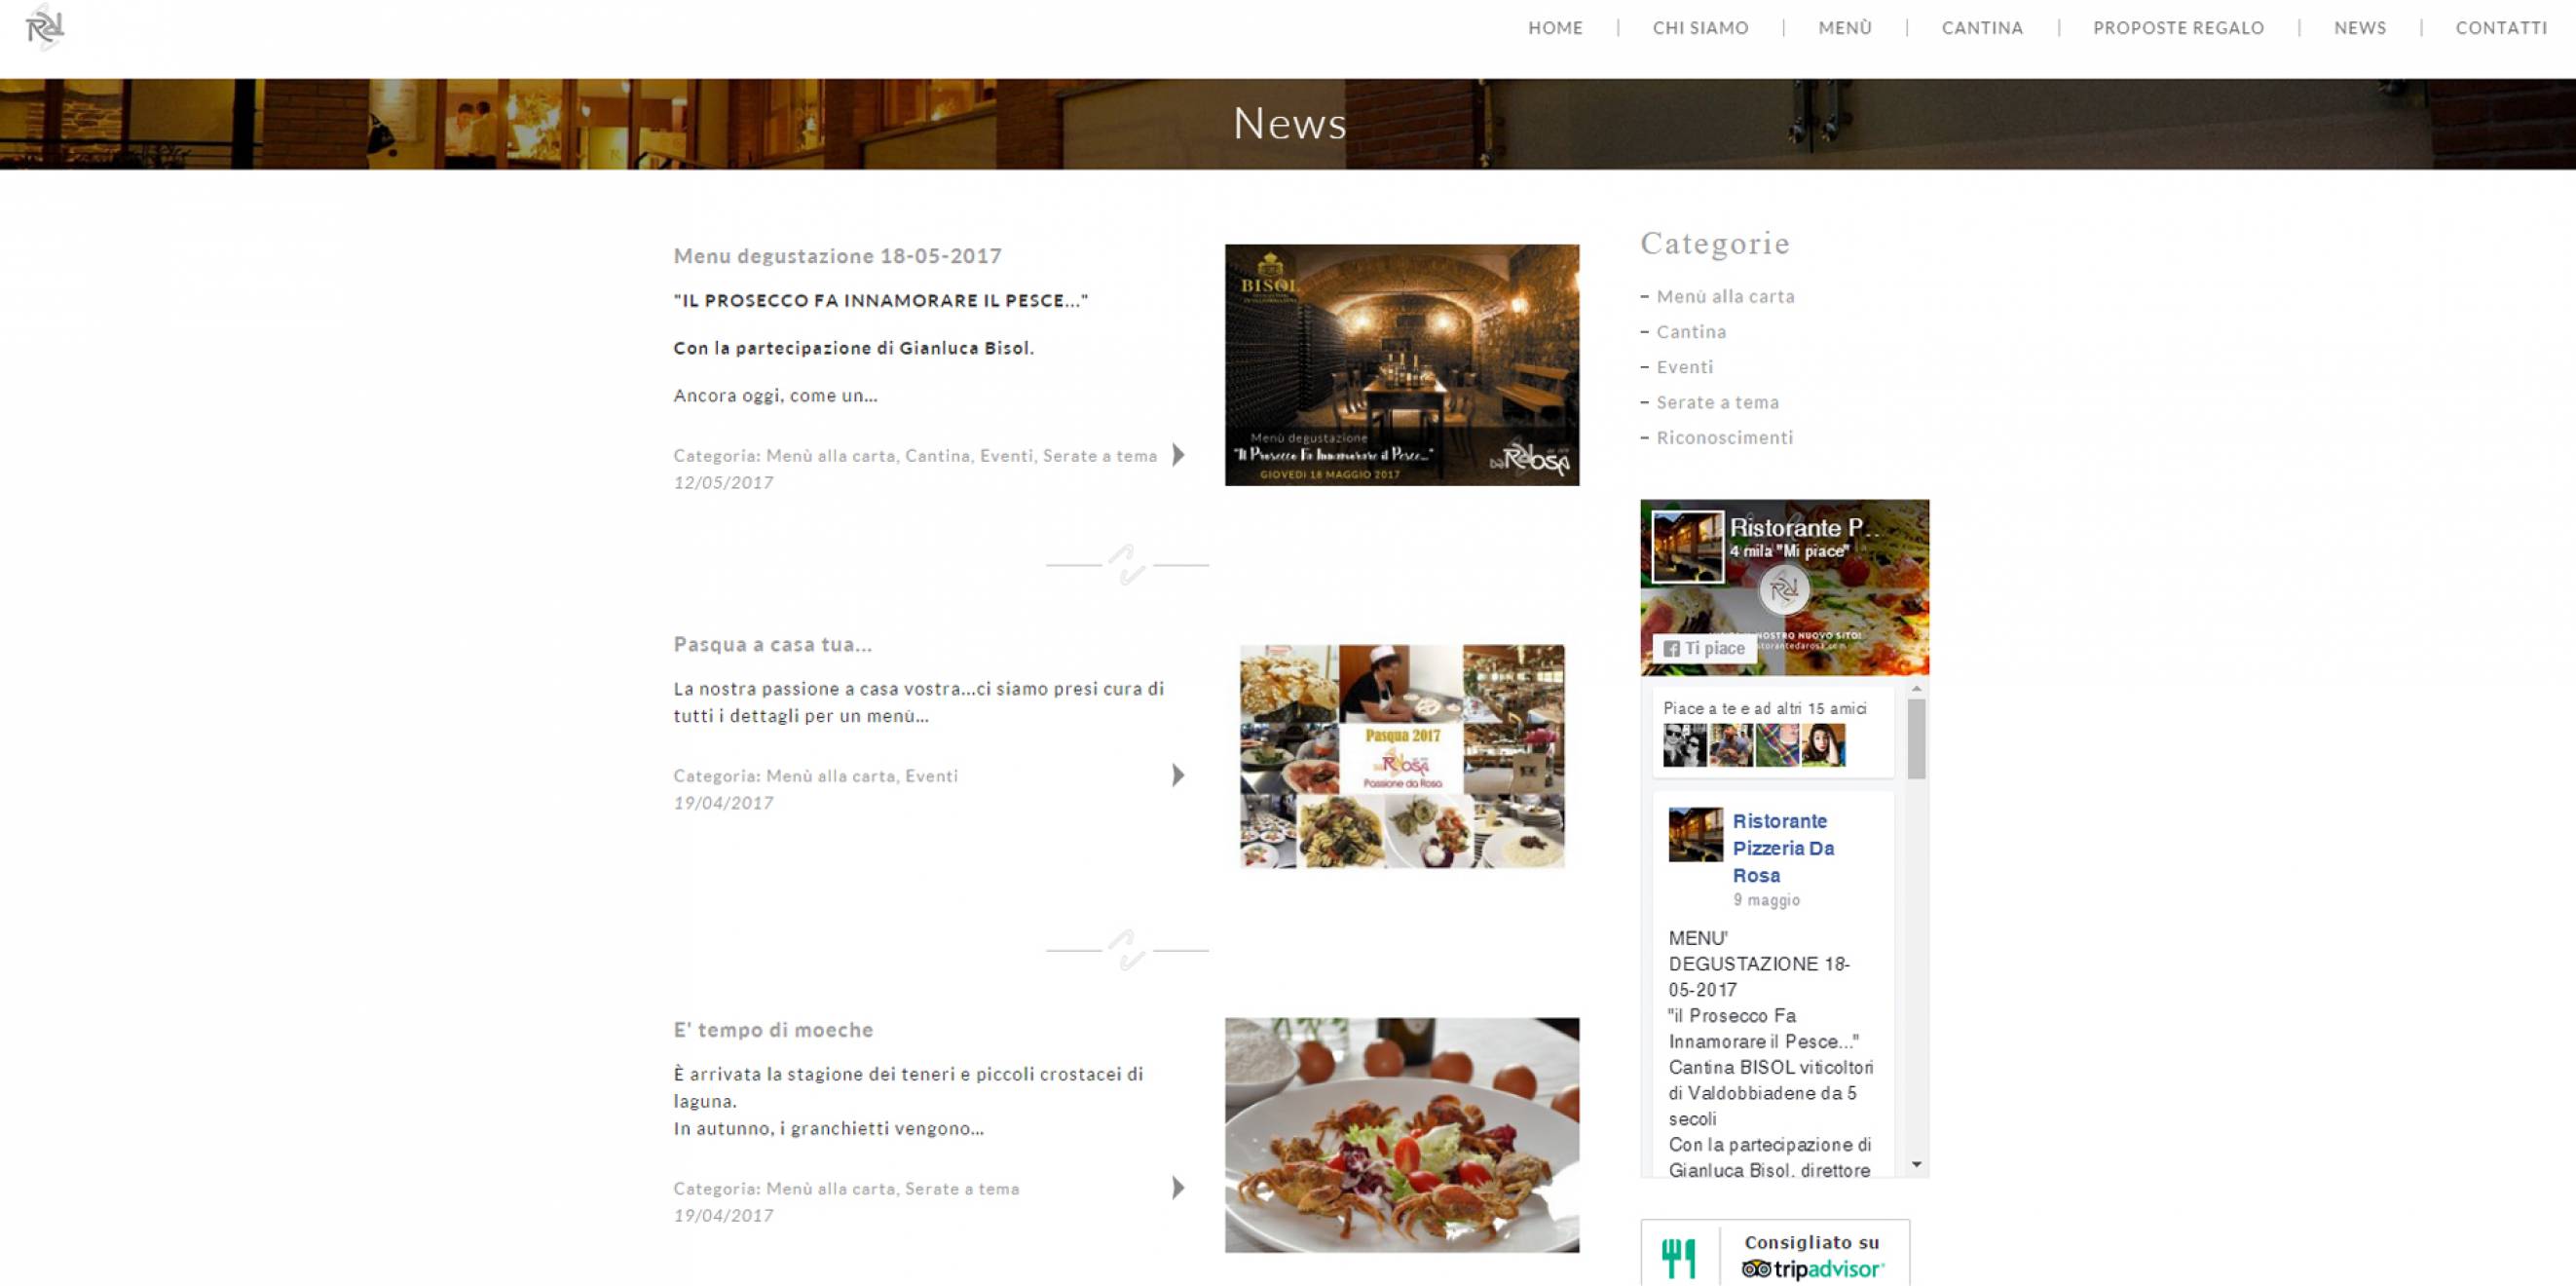 pagina news sito internet ristorante da rosa cantù newvisibility